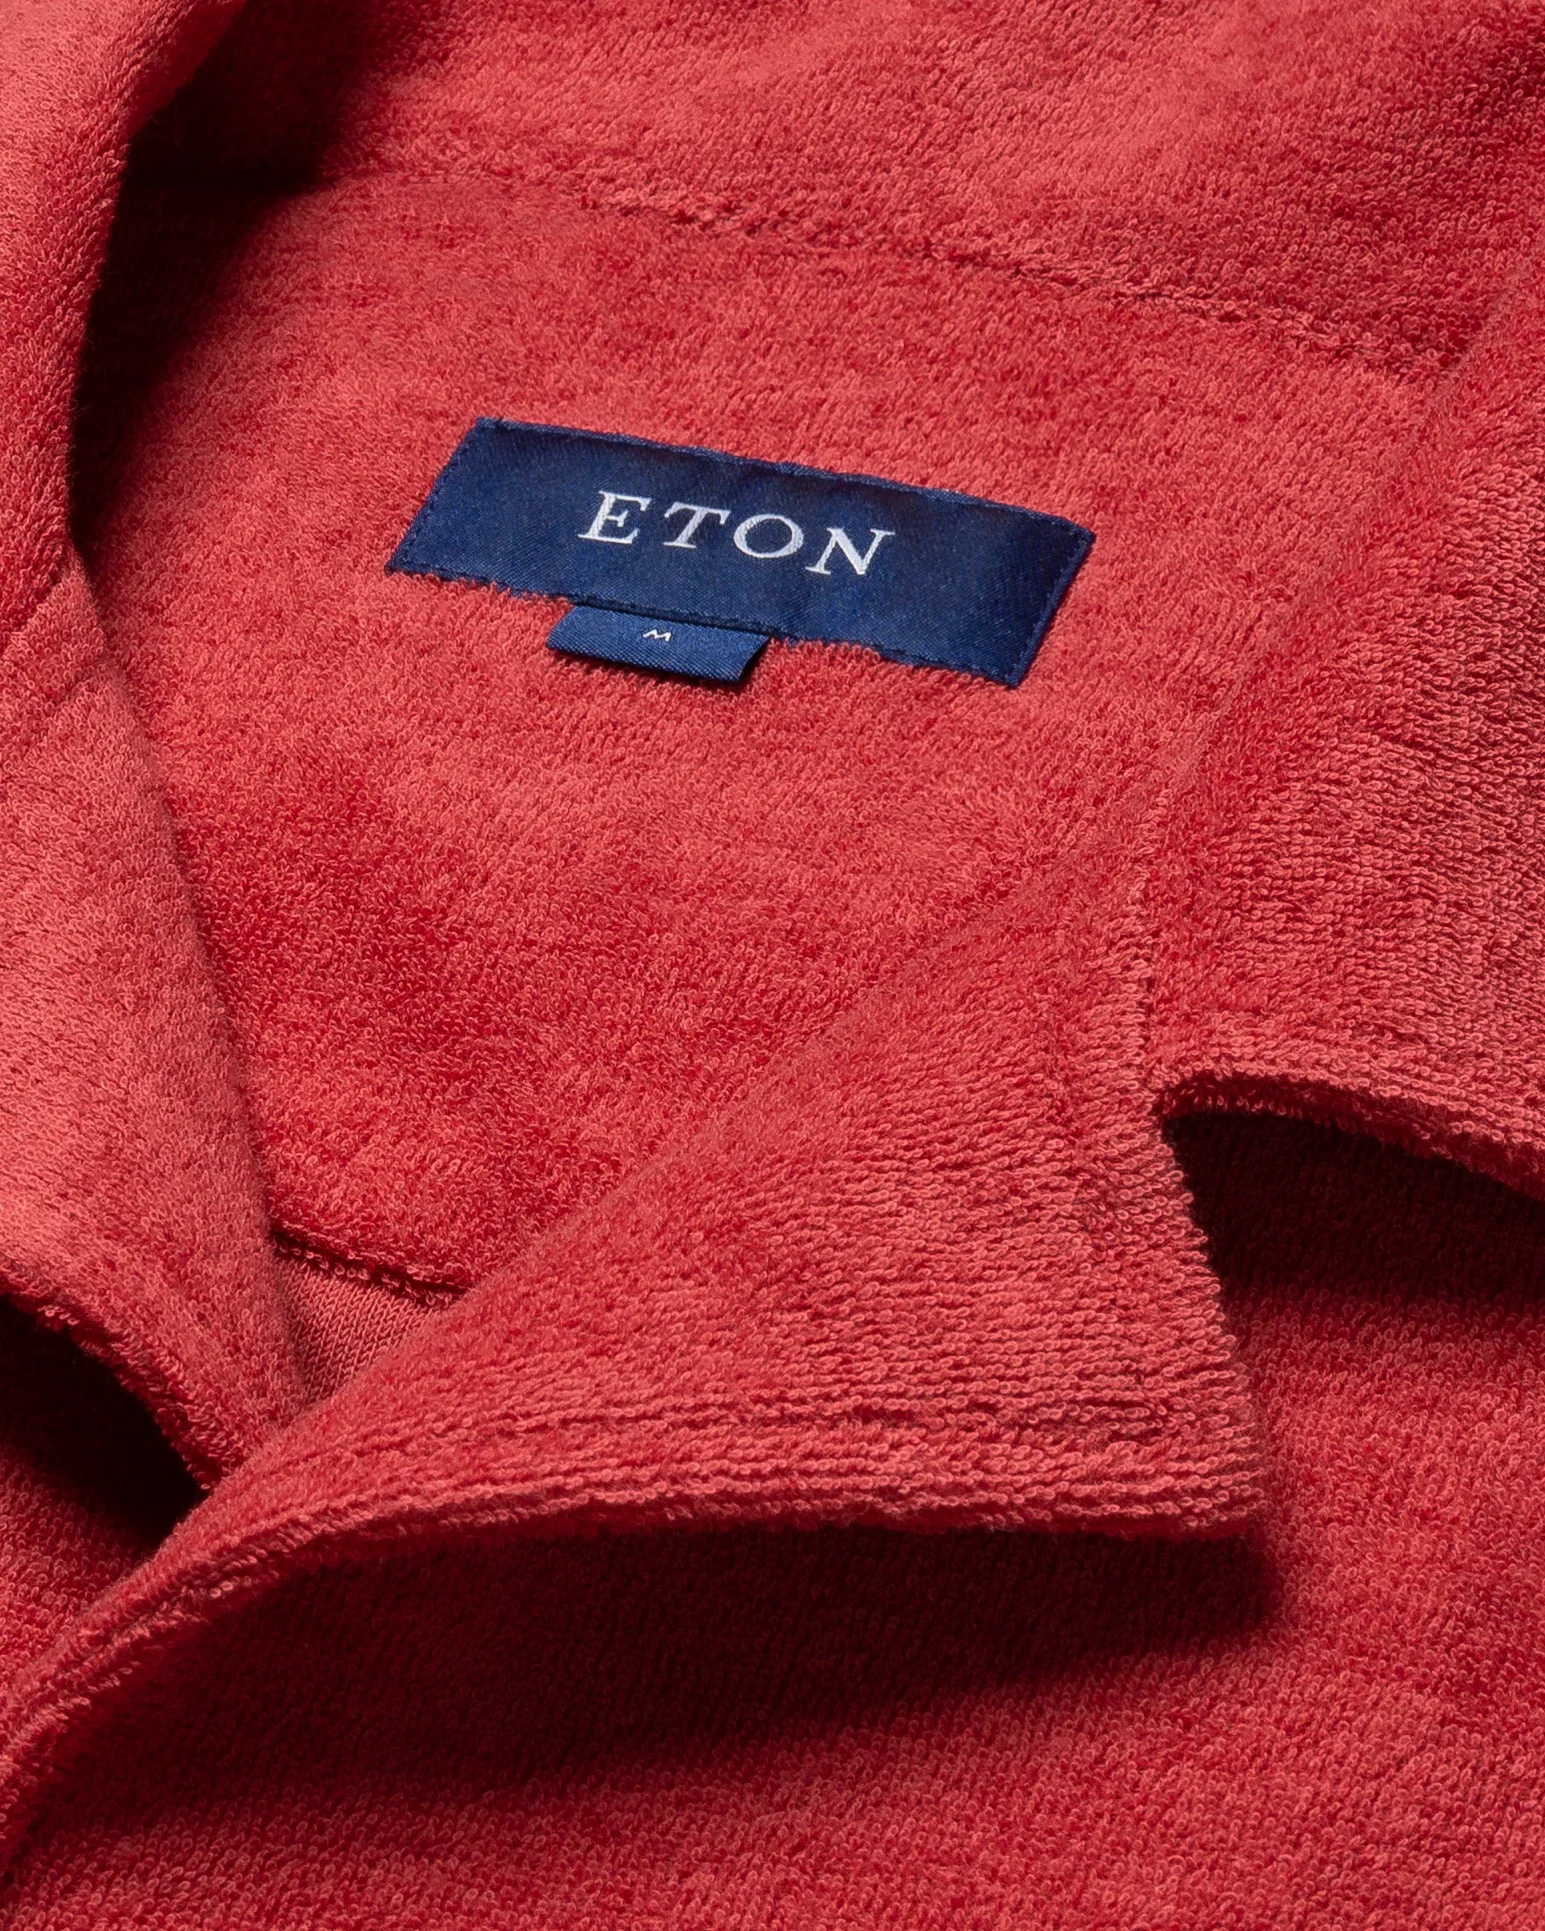 Eton - red terry resort shirt